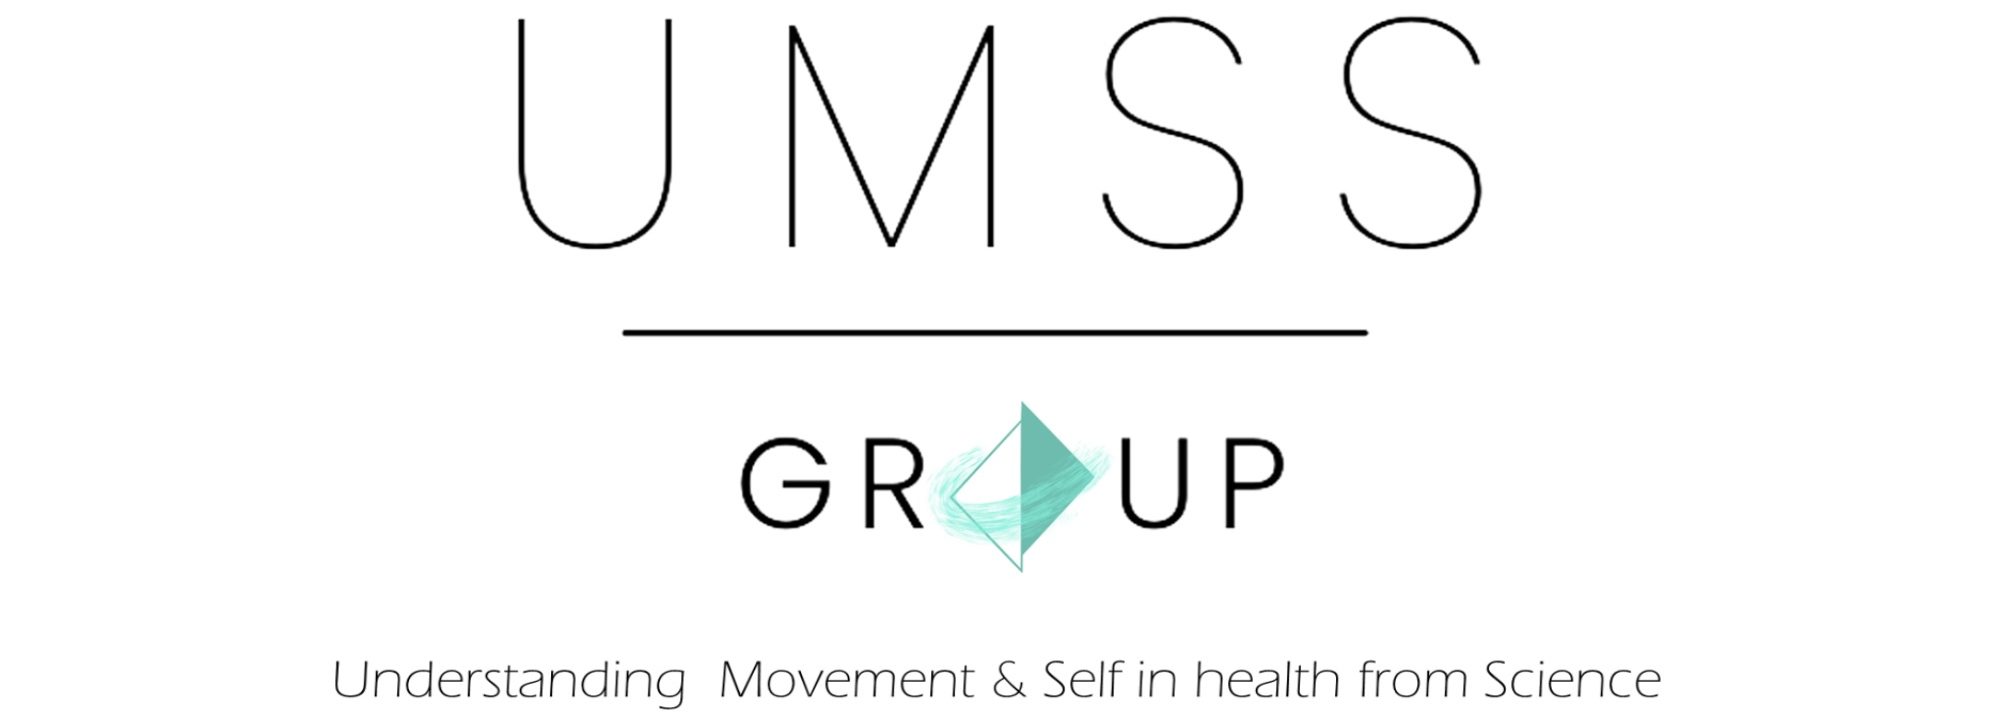 UMSS Group